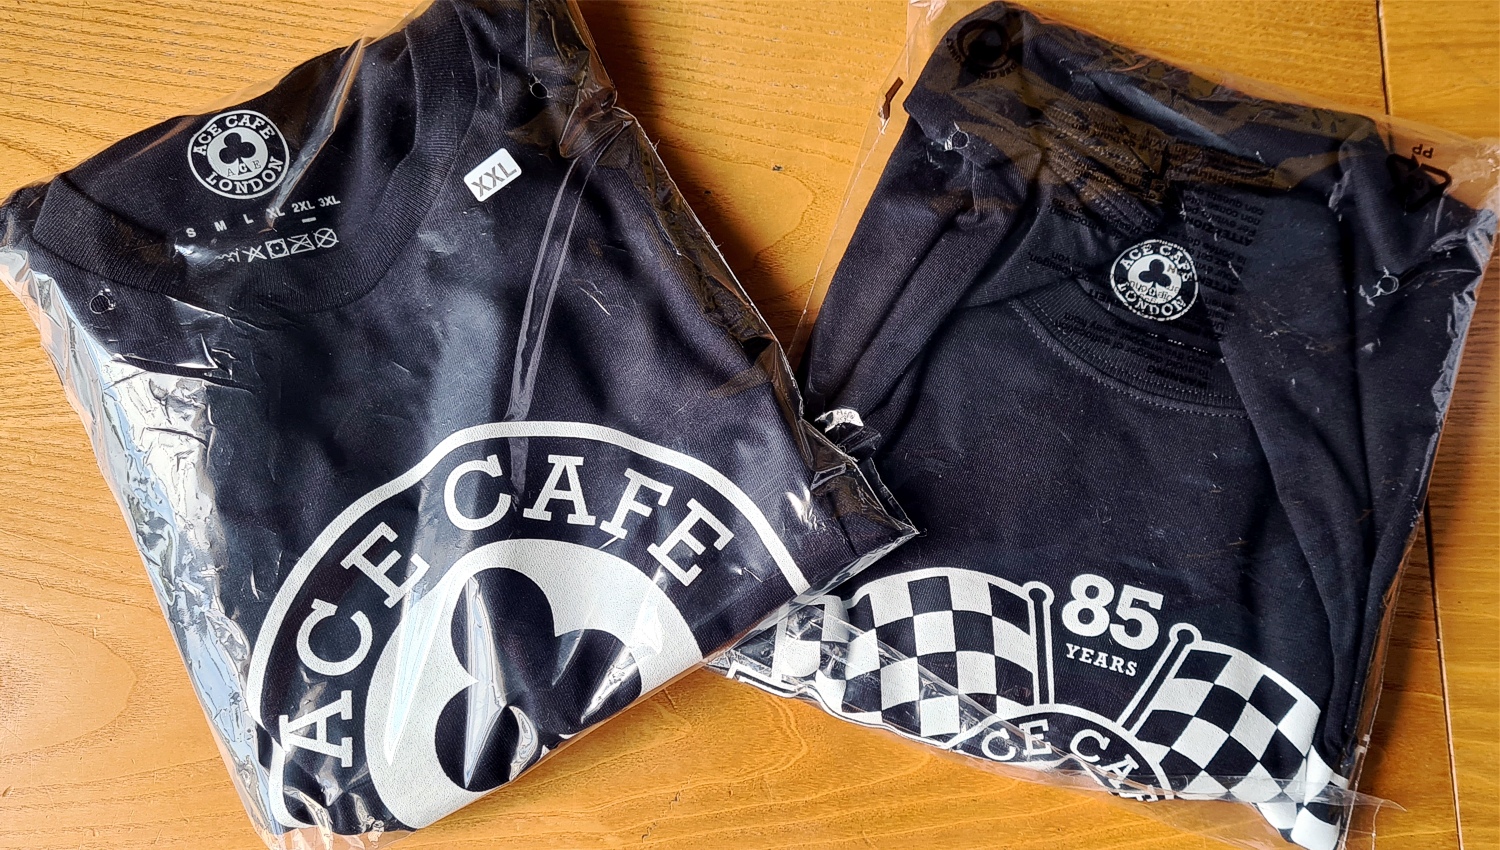 Ace Cafe Shirts